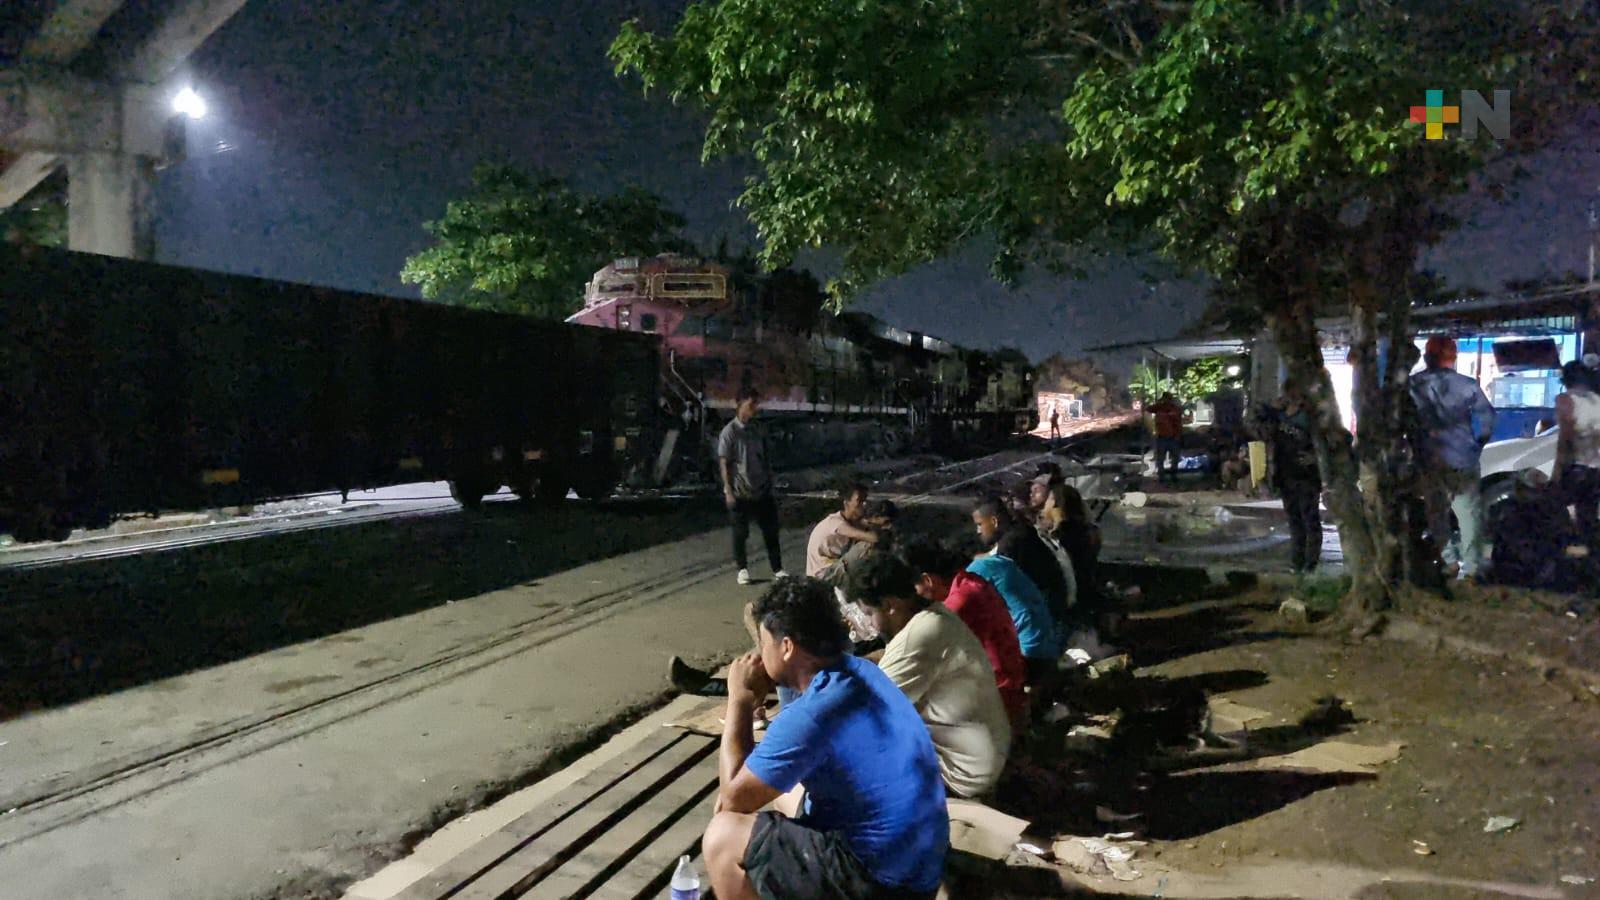 Migrantes suben a vagones de tren ante falta de recursos